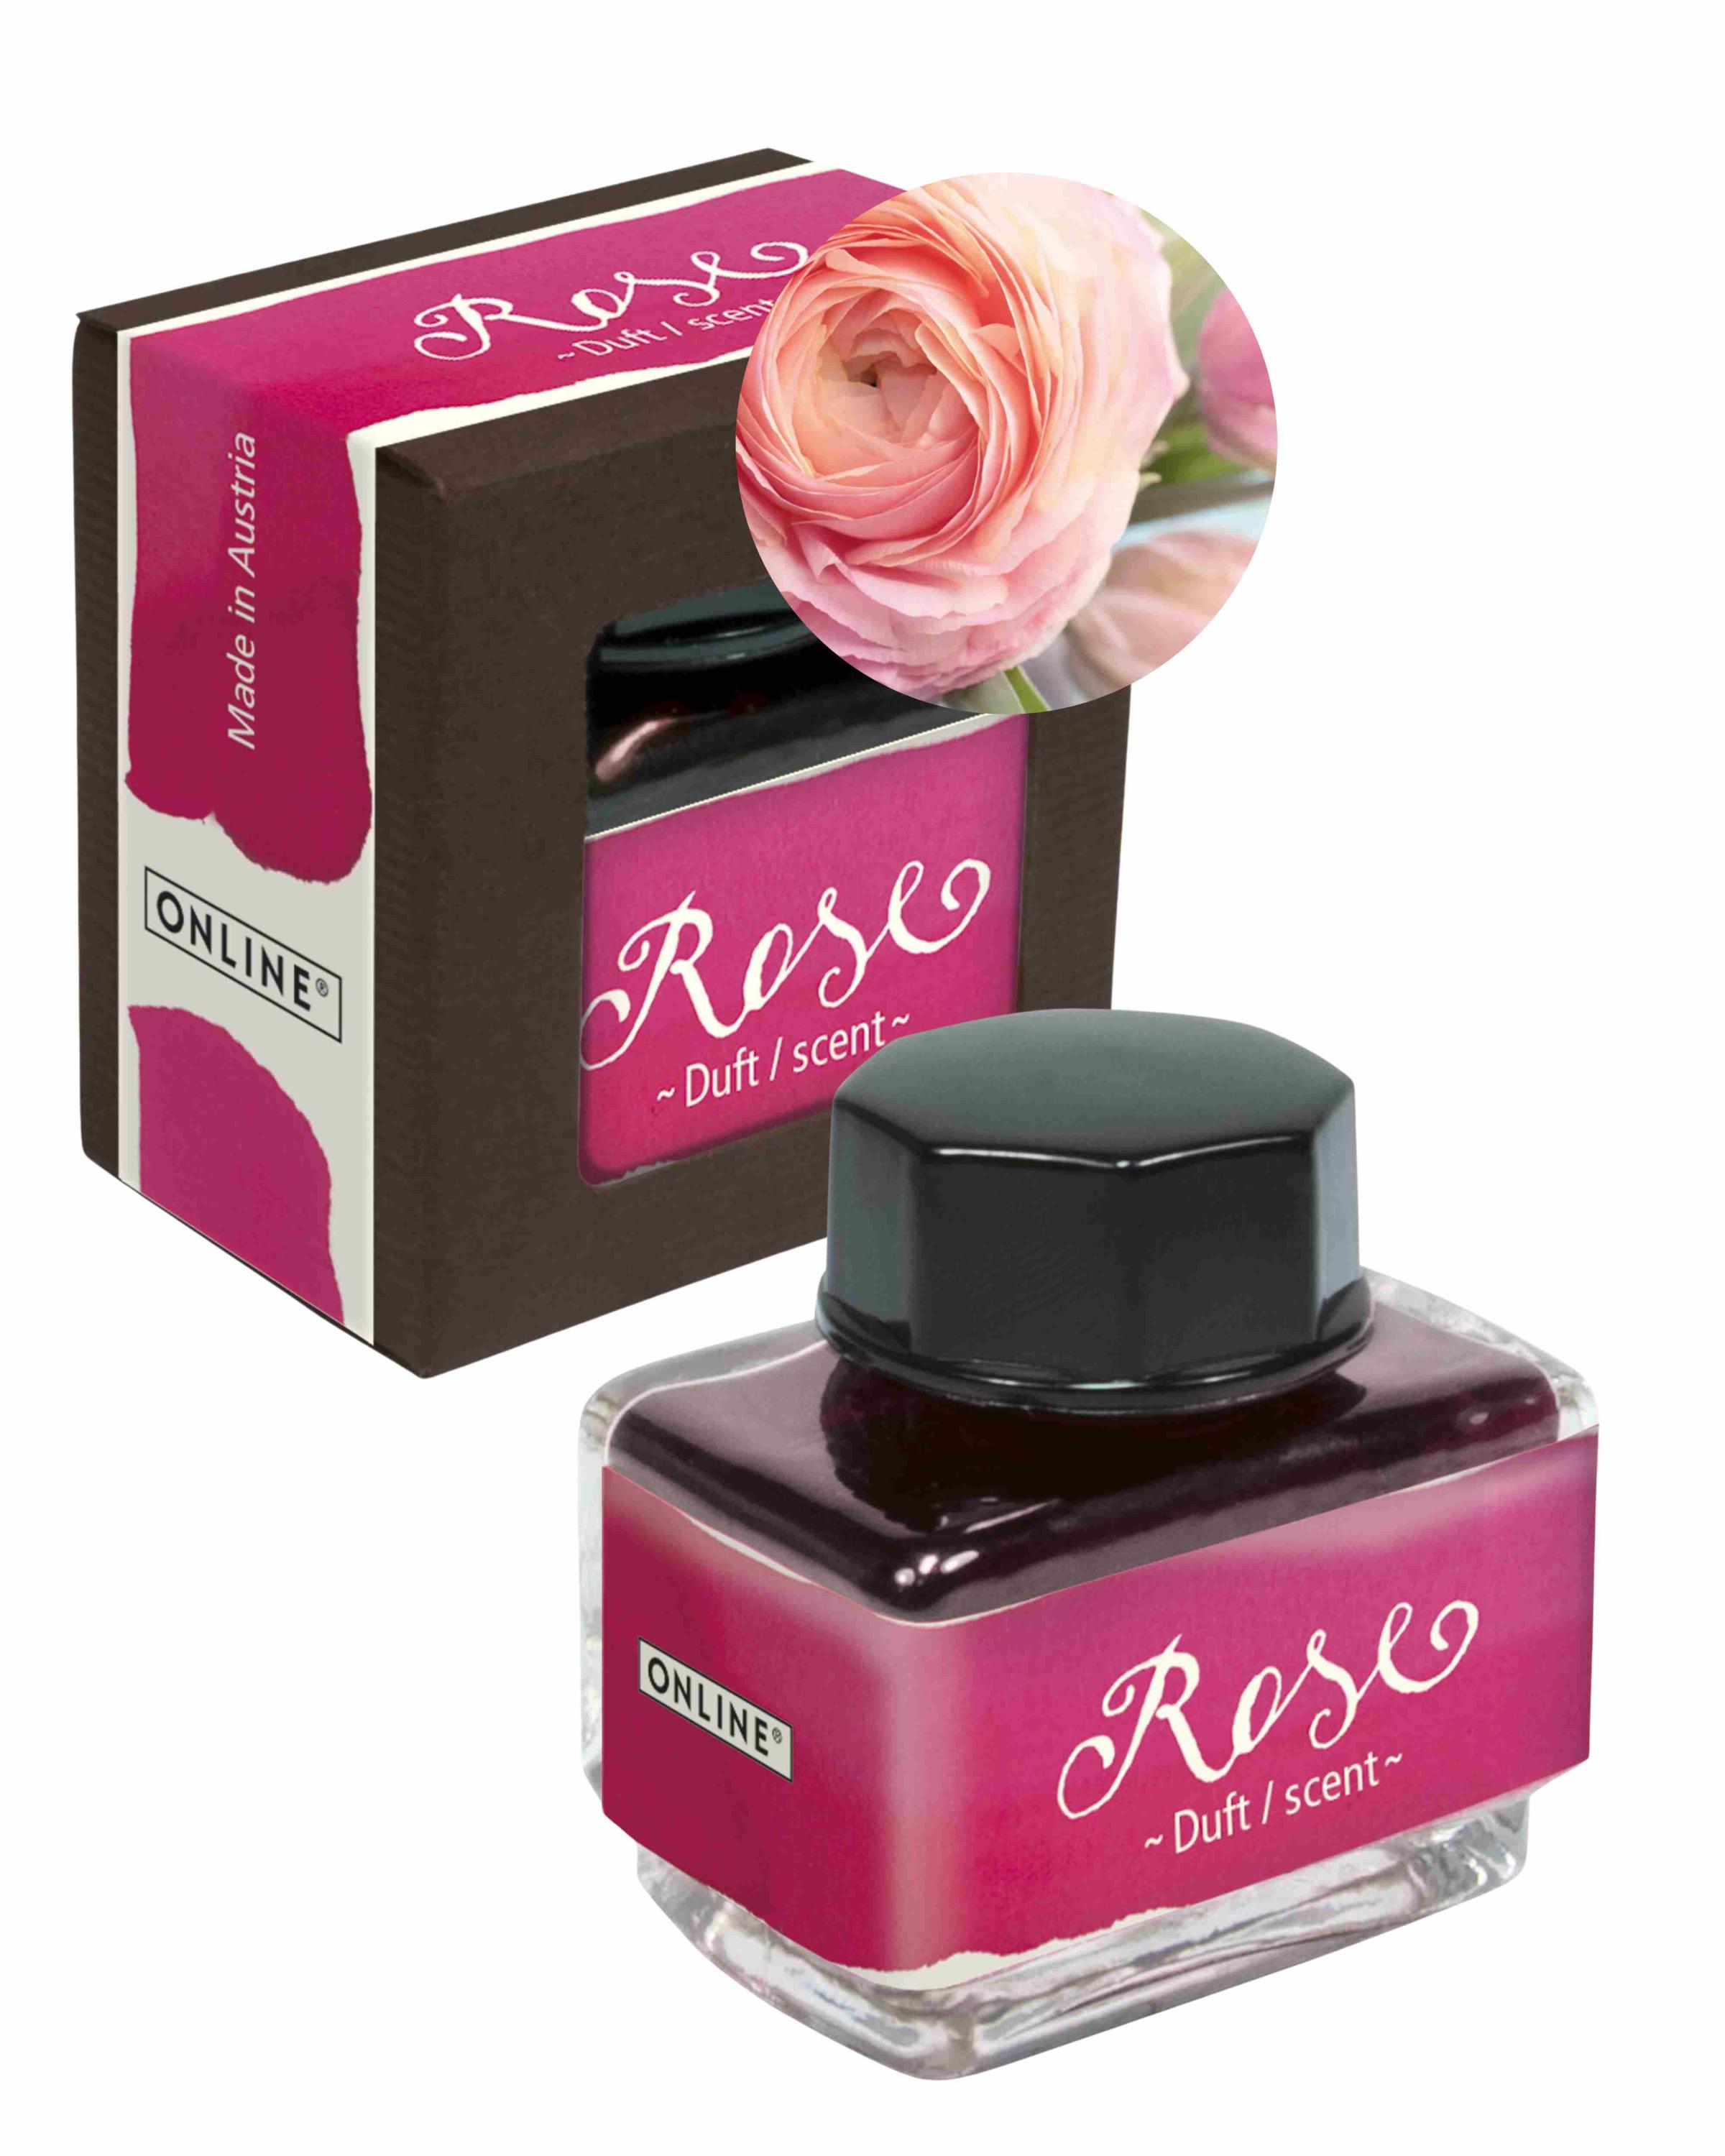 Tinte der Sinne 15 ml mit Duft - Aroma Rose